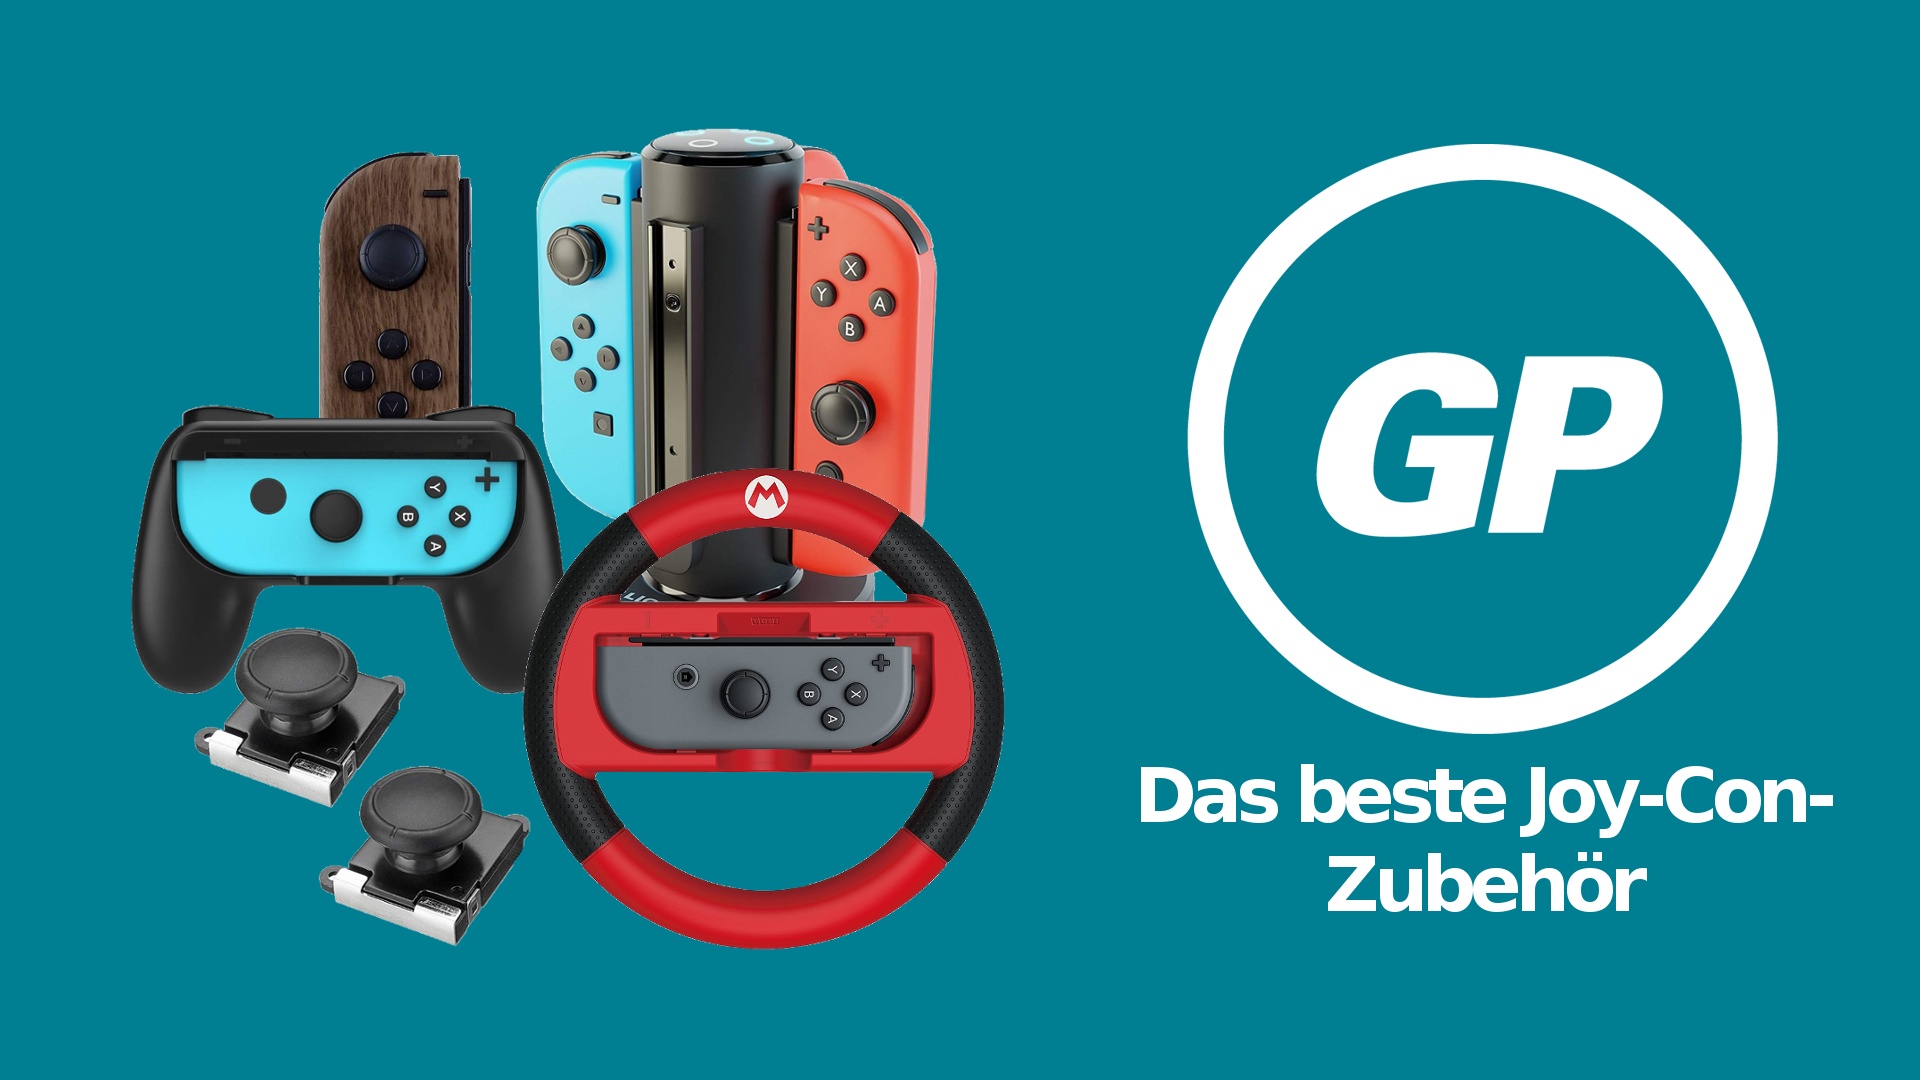 2er Set Gaming-Lenkrad mit Griff für Nintendo Switch-Controller - Blau und  - Rot